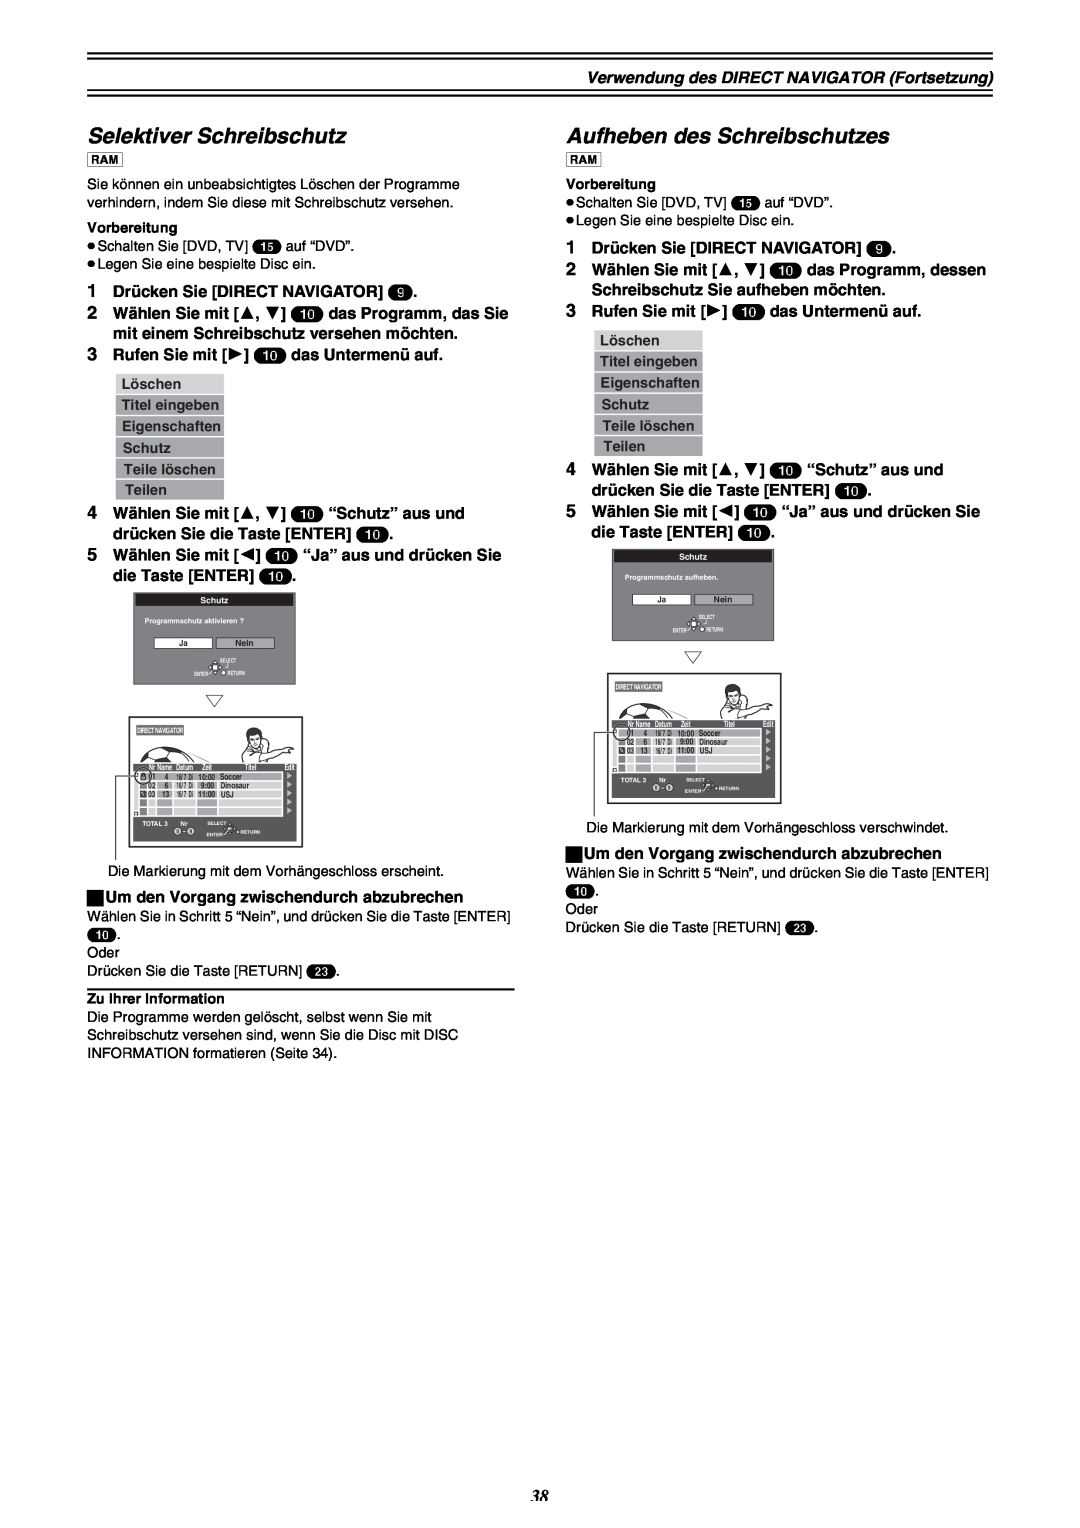 Panasonic DMR-E30 manual Selektiver Schreibschutz, Aufheben des Schreibschutzes 